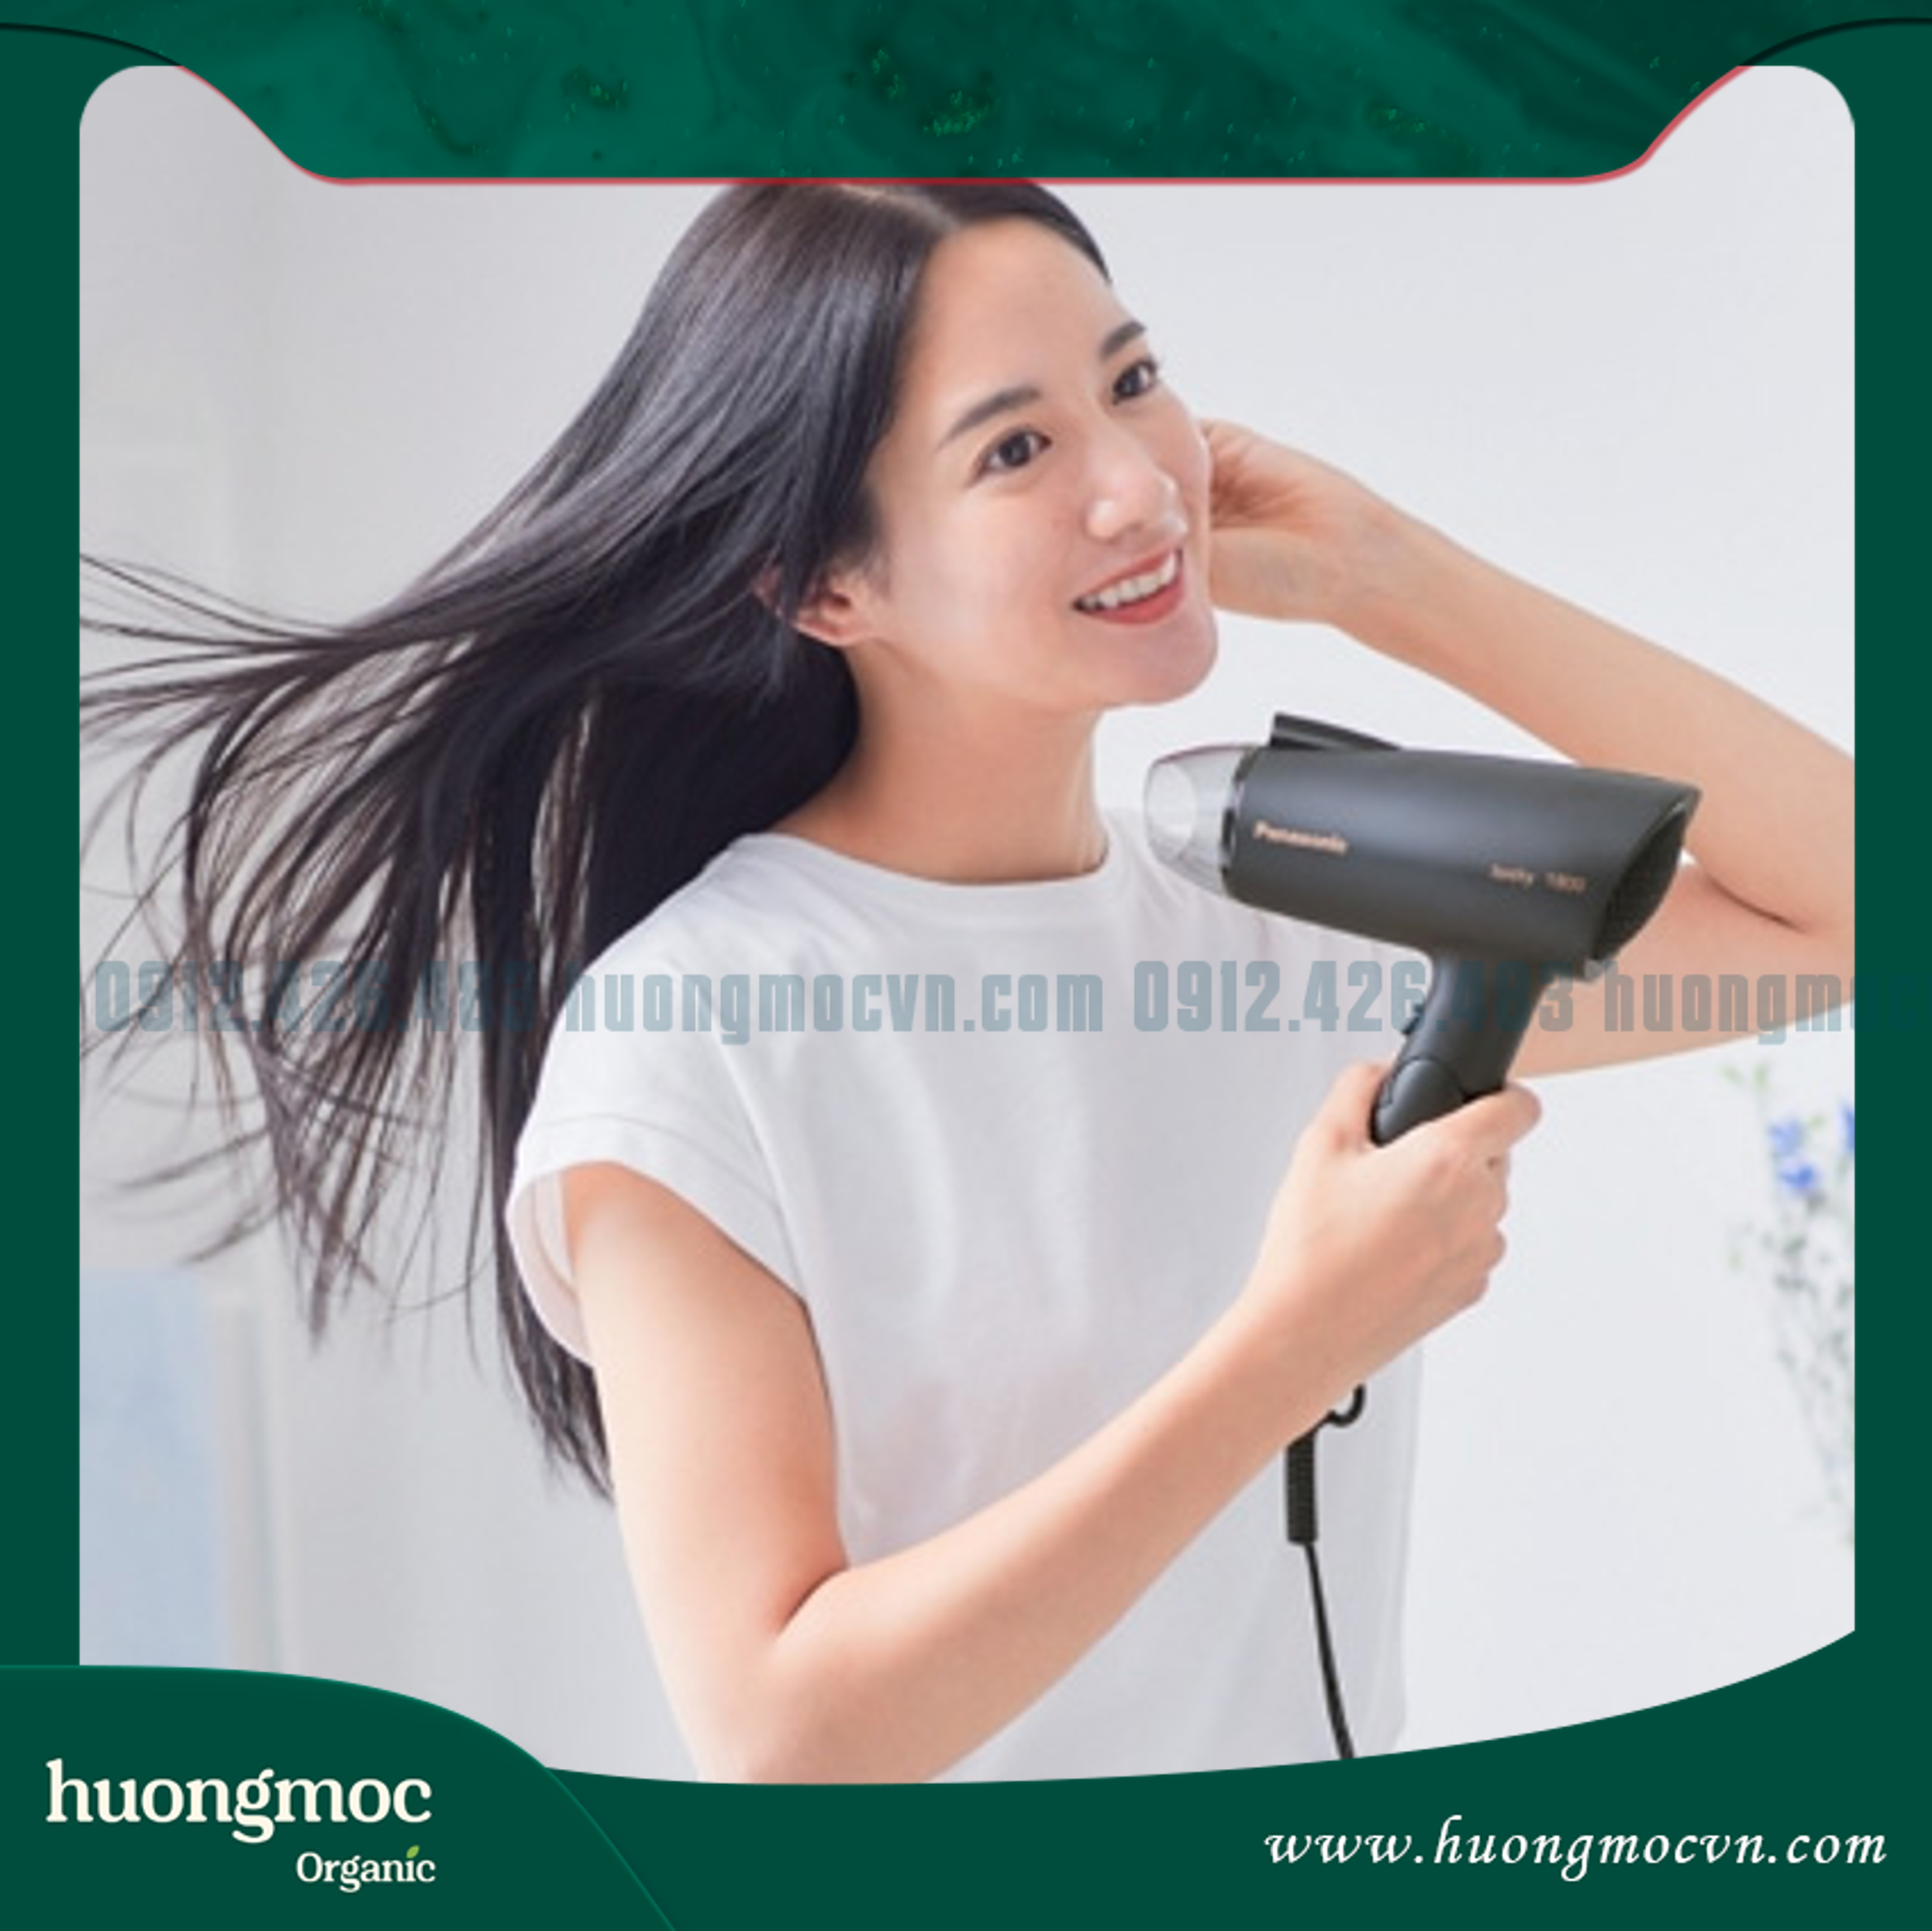 Hạn chế sử dụng dụng cụ nhiệt là một trong những cách chăm sóc tóc uốn nhuộm tại nhà hiệu quả